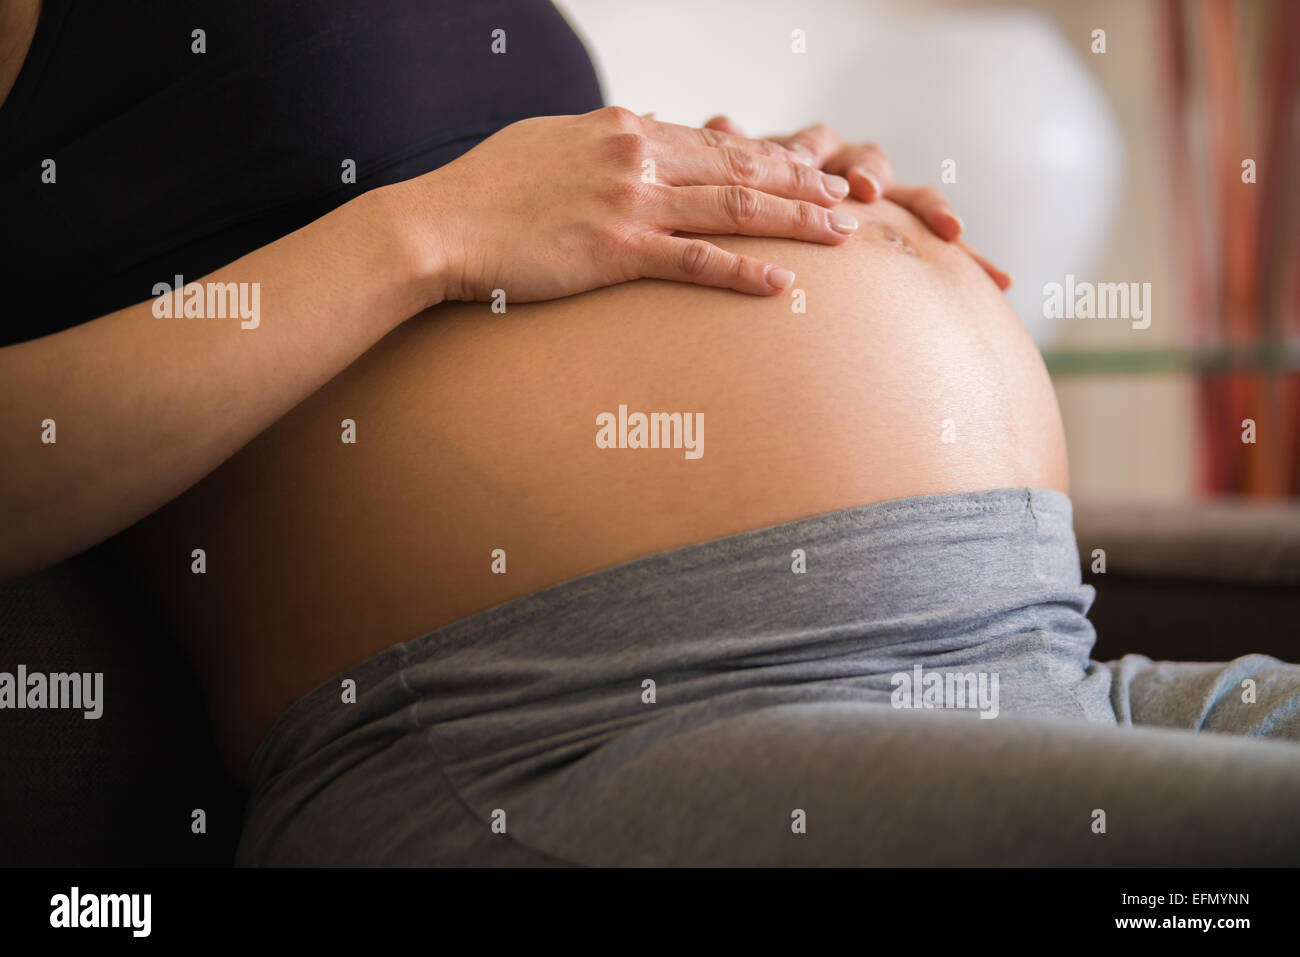 Baby Bump Image D Une Femme Enceinte De 8 Mois Assis Sur Un Canape Posant Sa Main Sur Son Bebe Ventre Bosse Photo Stock Alamy